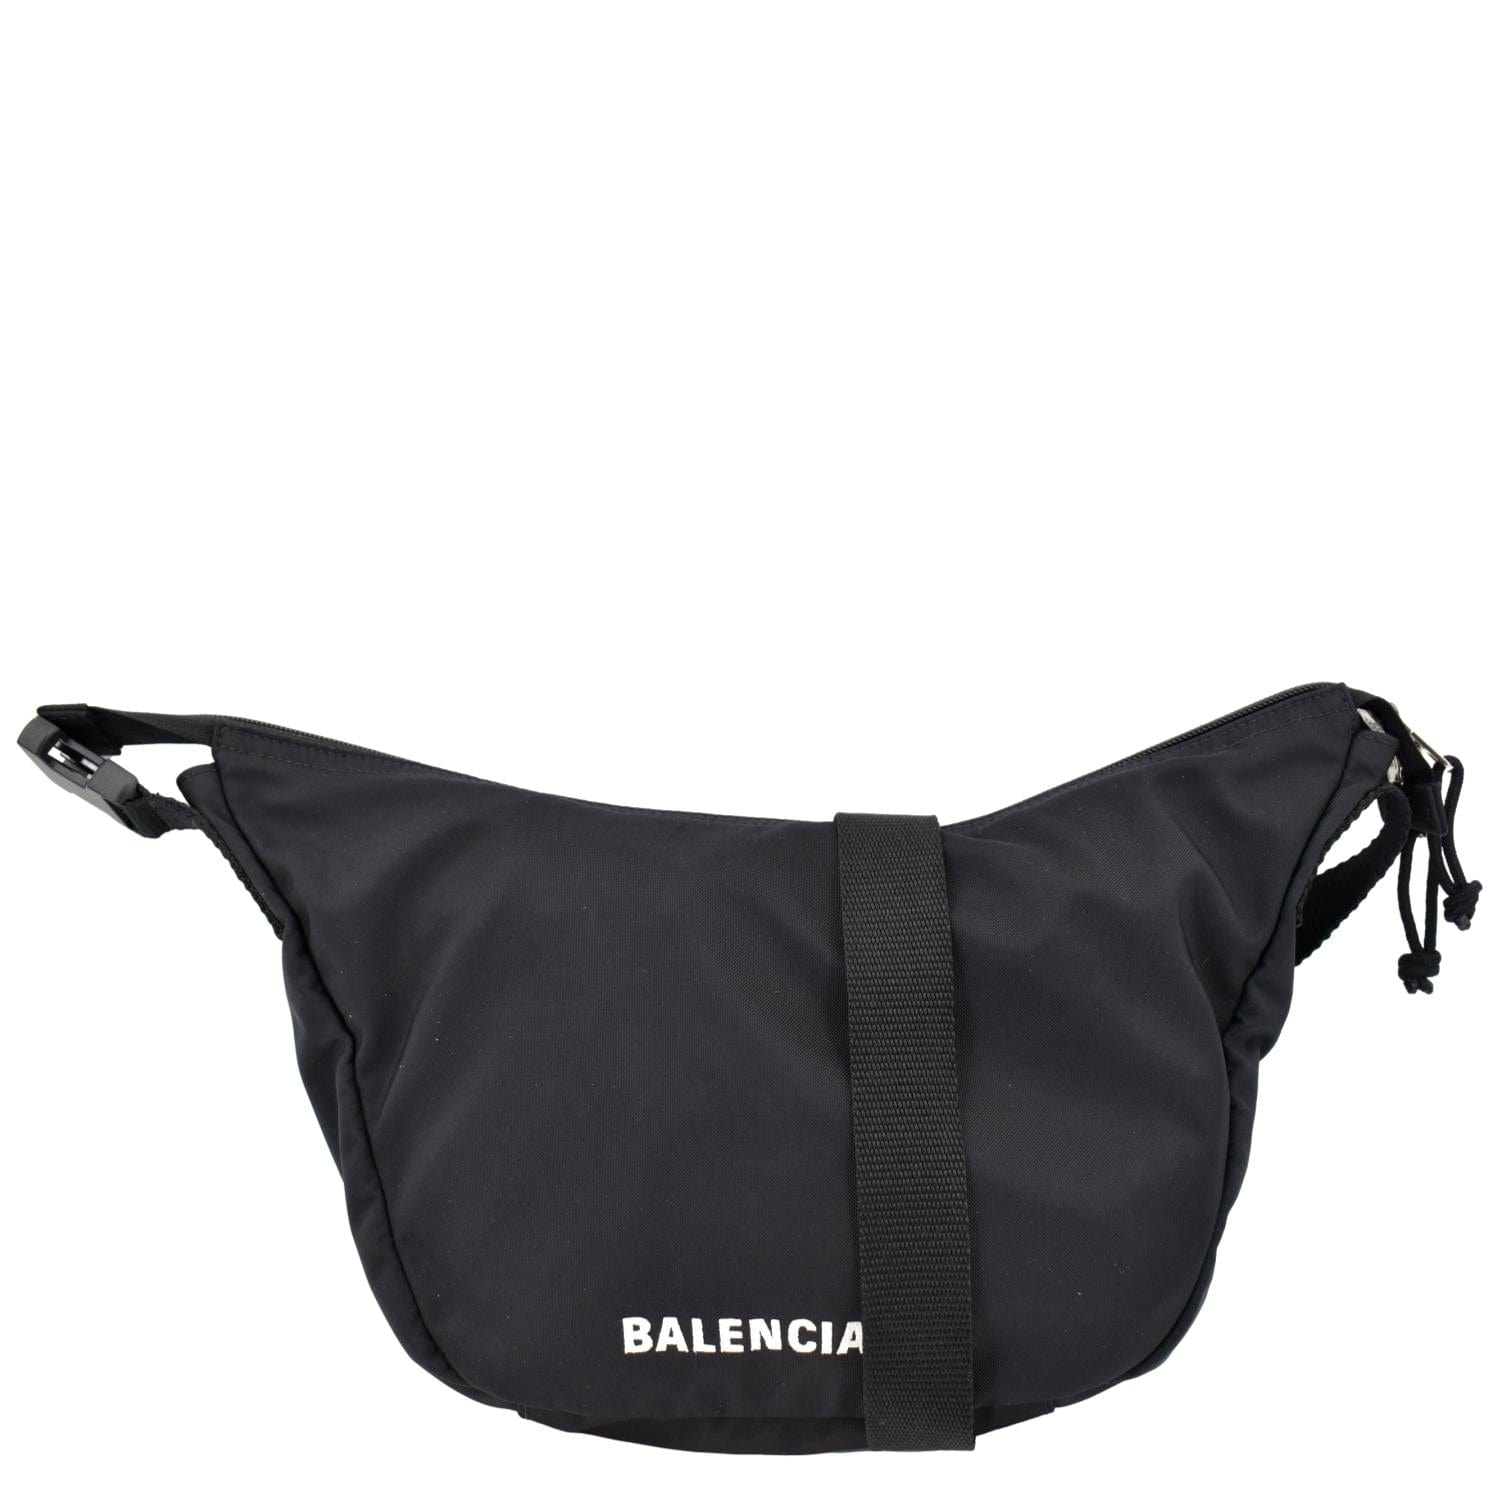 Balenciaga Logo Nylon Fanny Pack Available Now